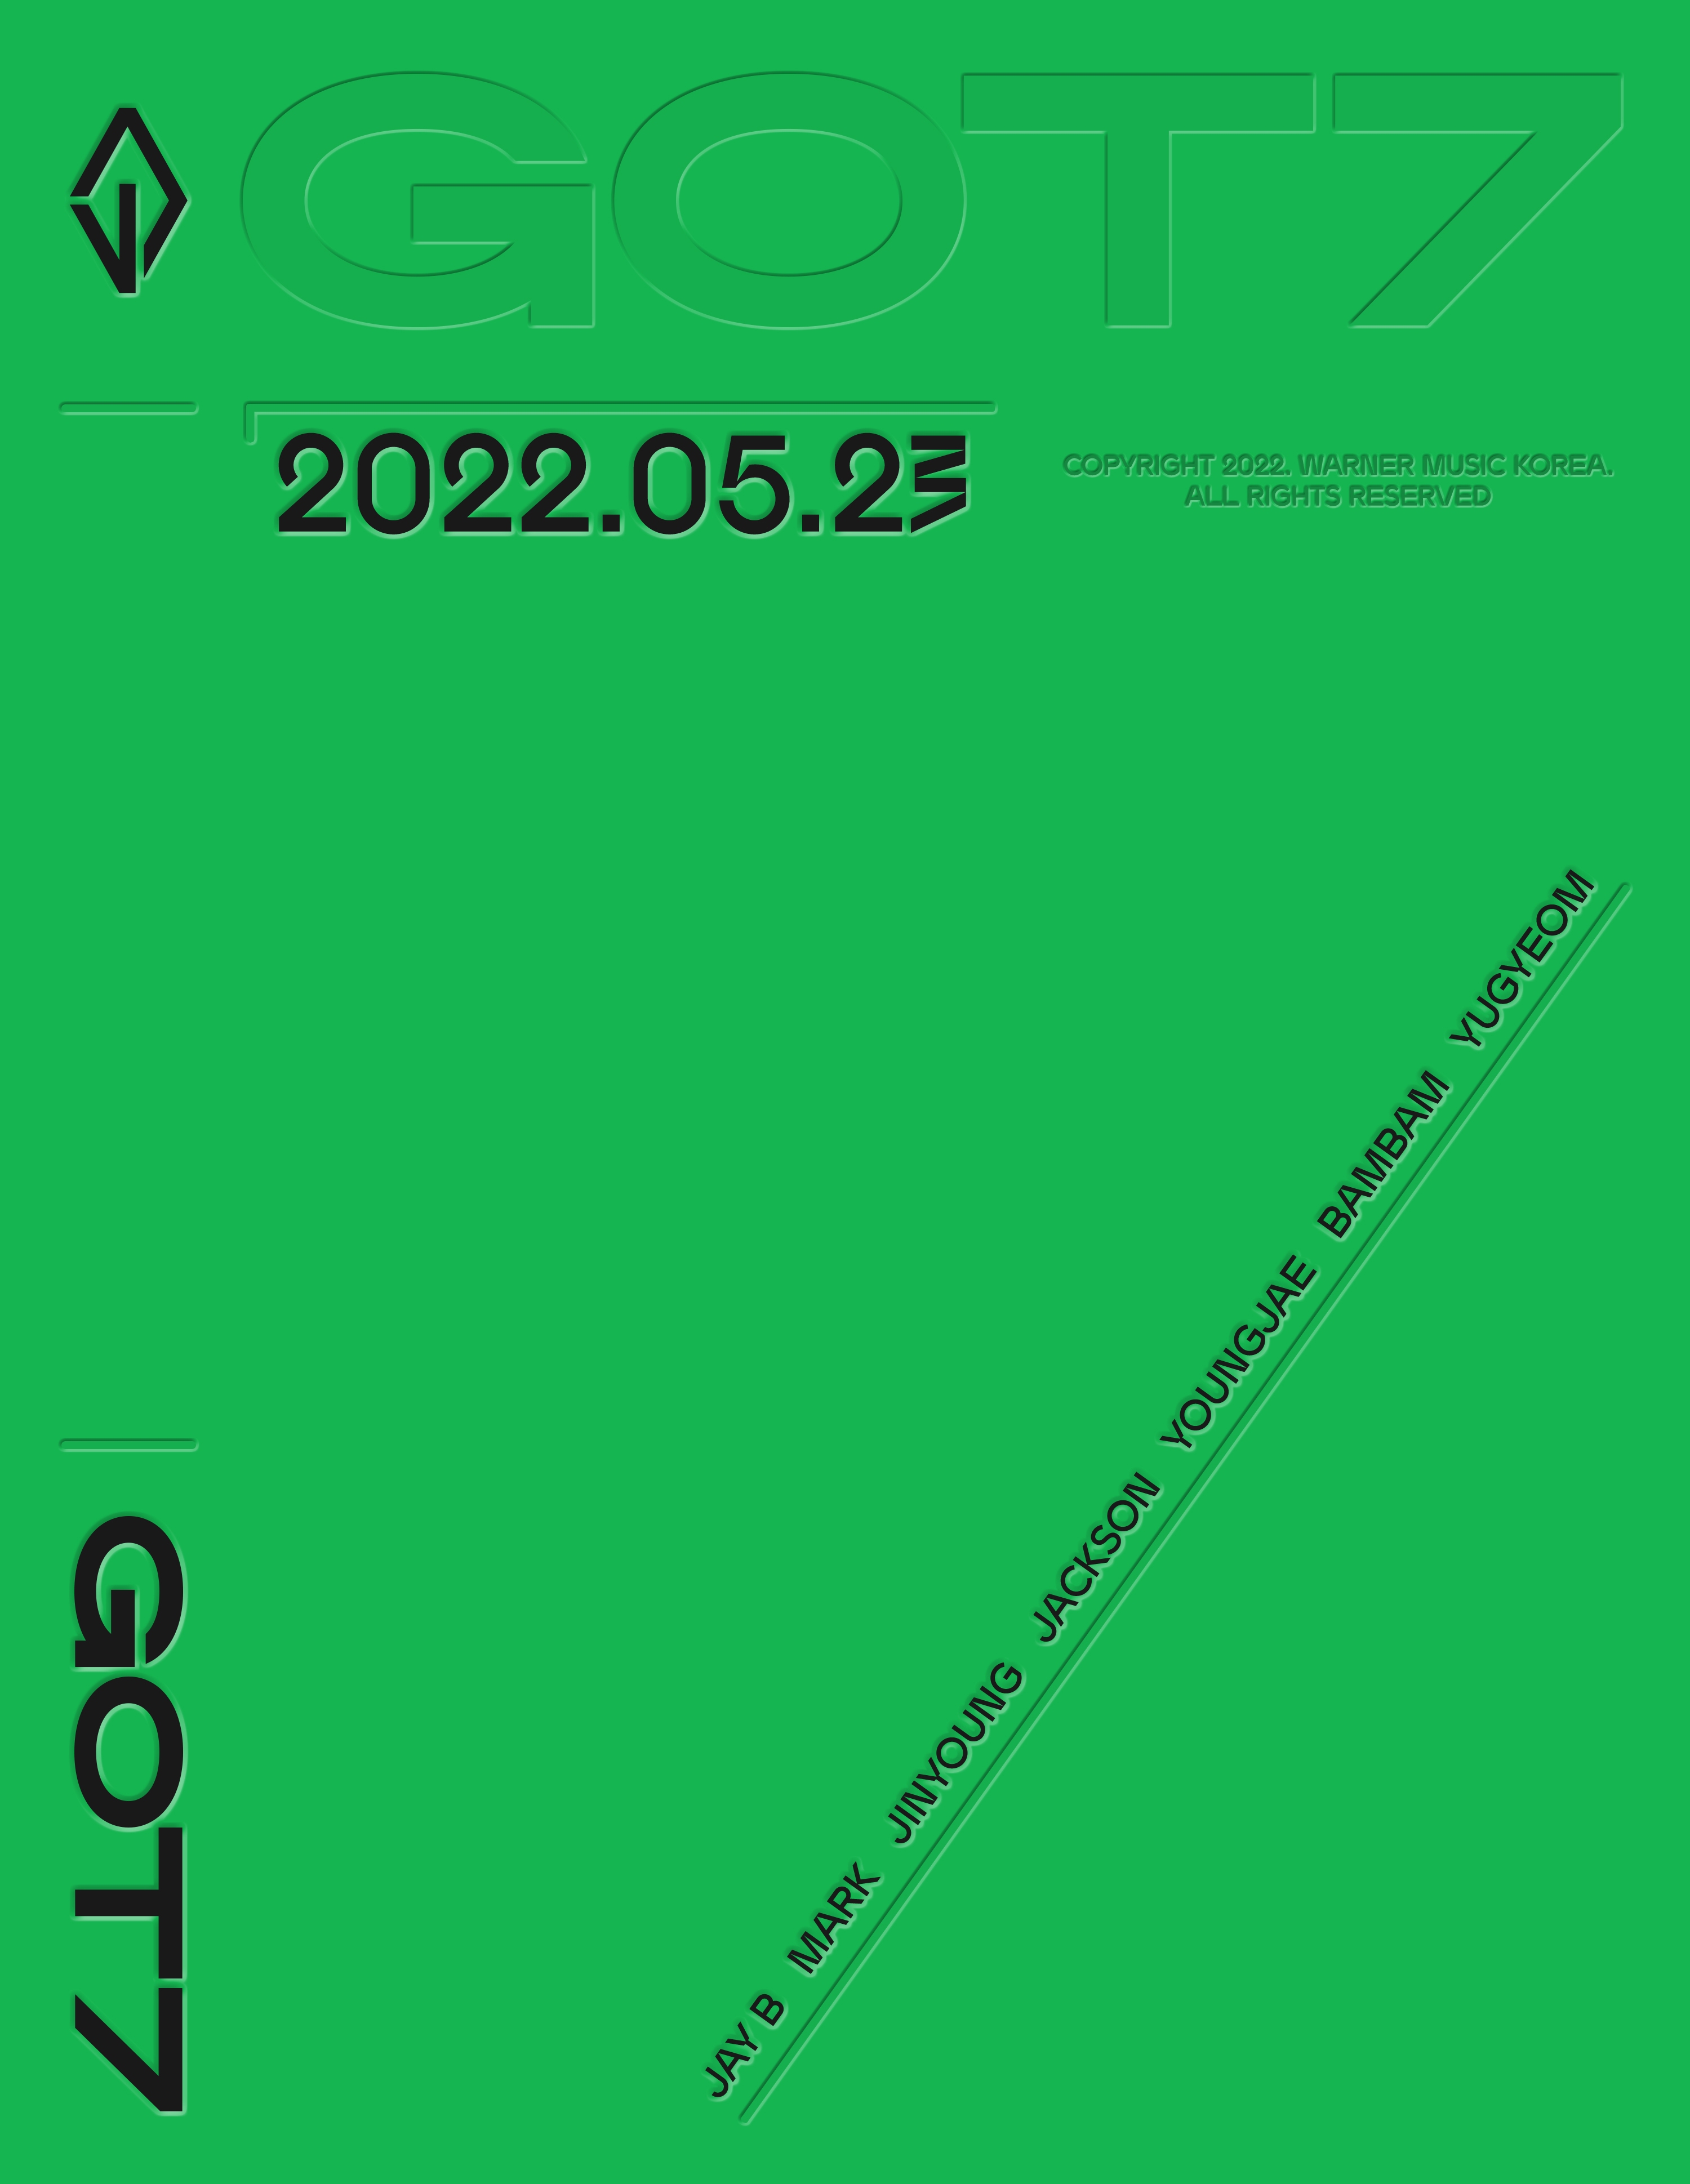 GOT7_2022_teaser1